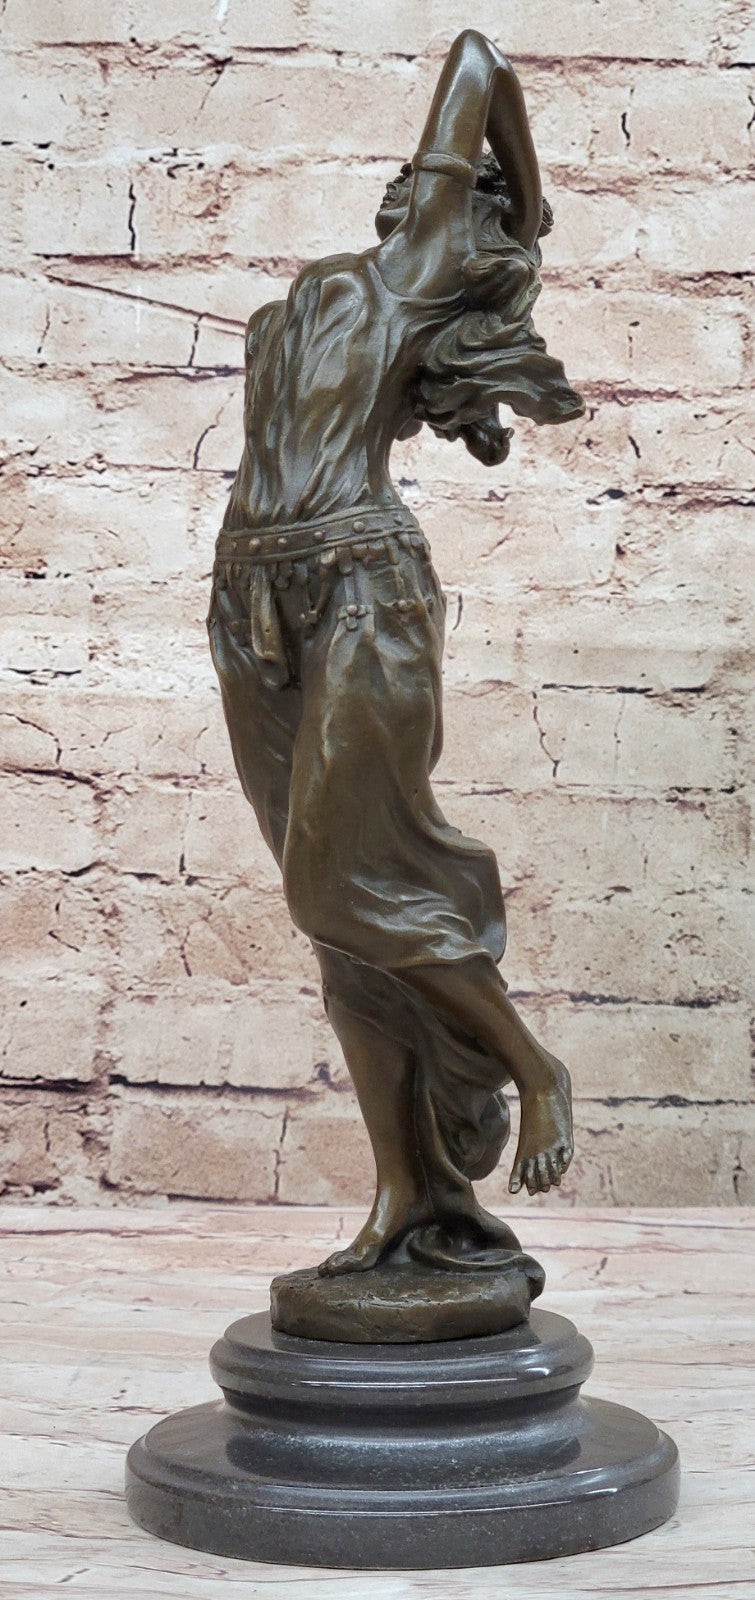 Art Deco/Nouveau Hot Cast Gypsy Dancer Bronze Masterpiece Sculpture Statue